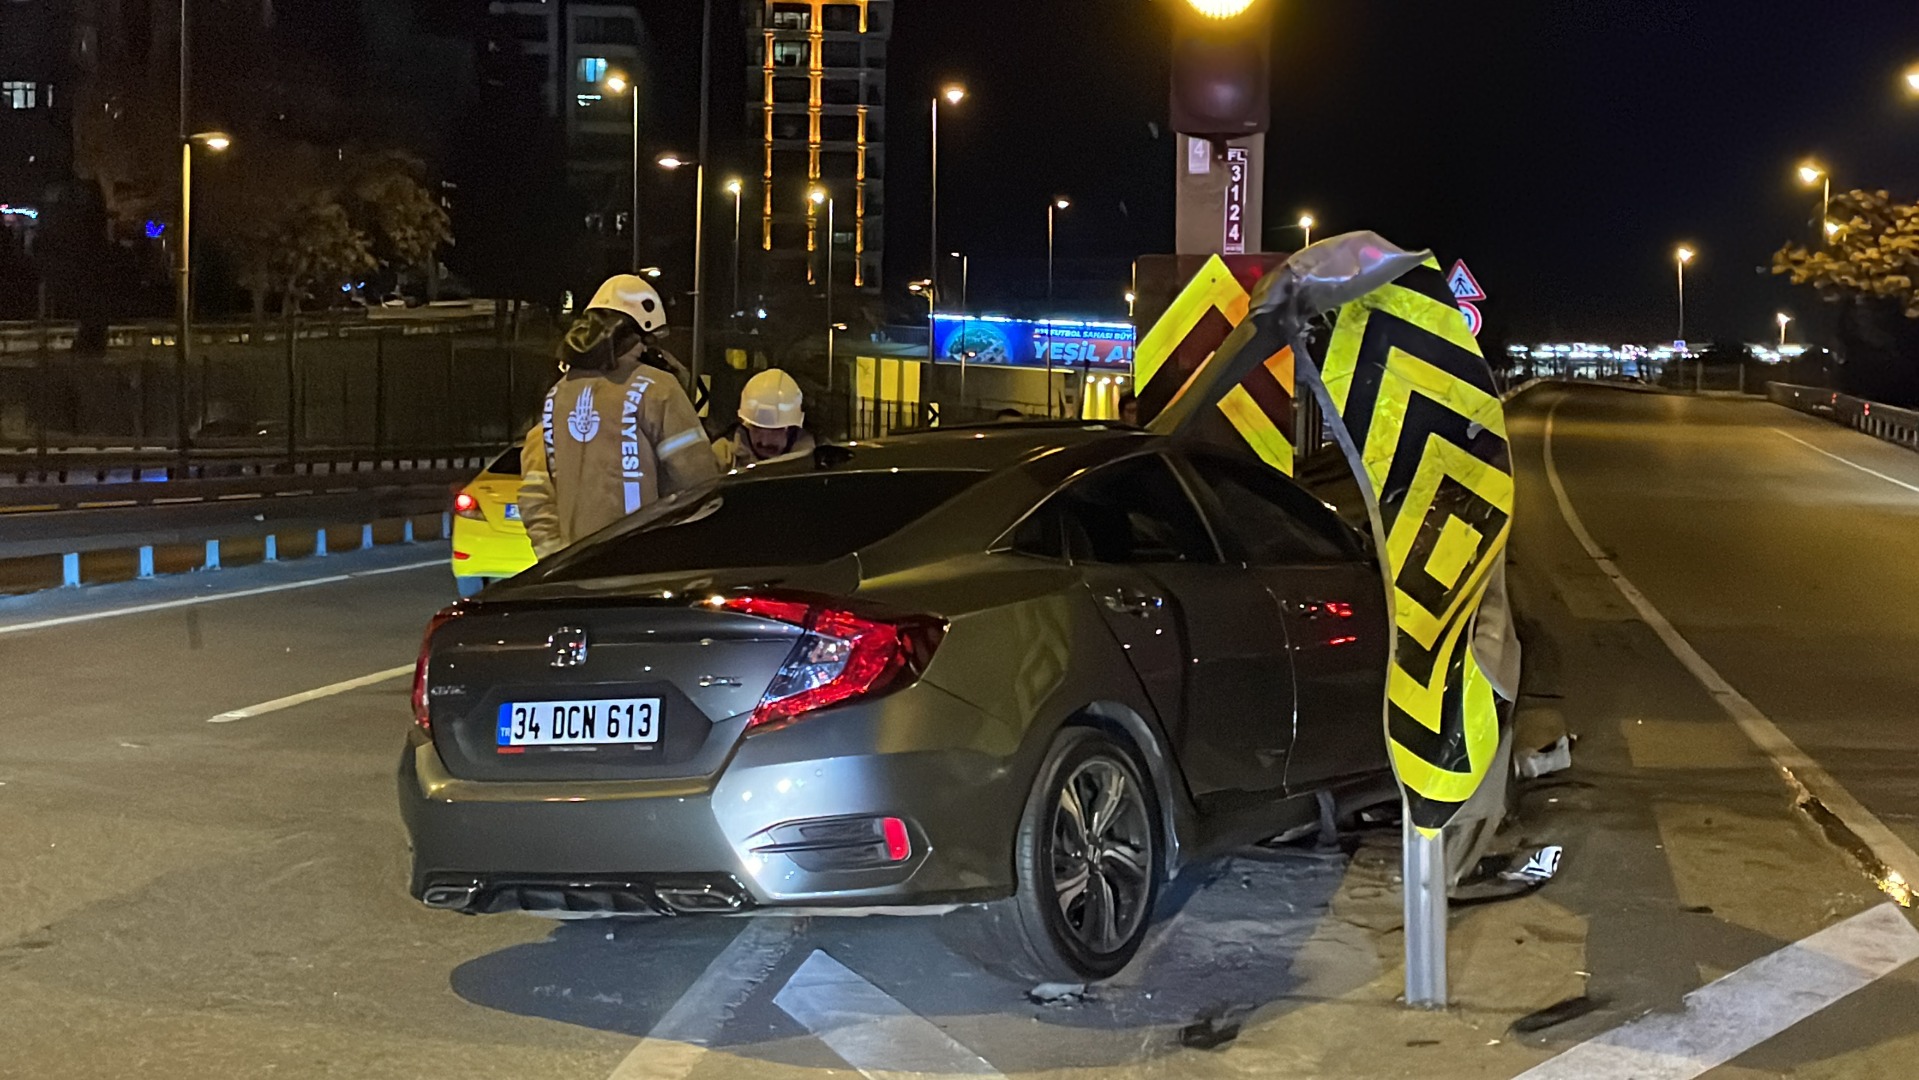 Kadıköy'de otomobil bariyere saplandı: 3 yaralı